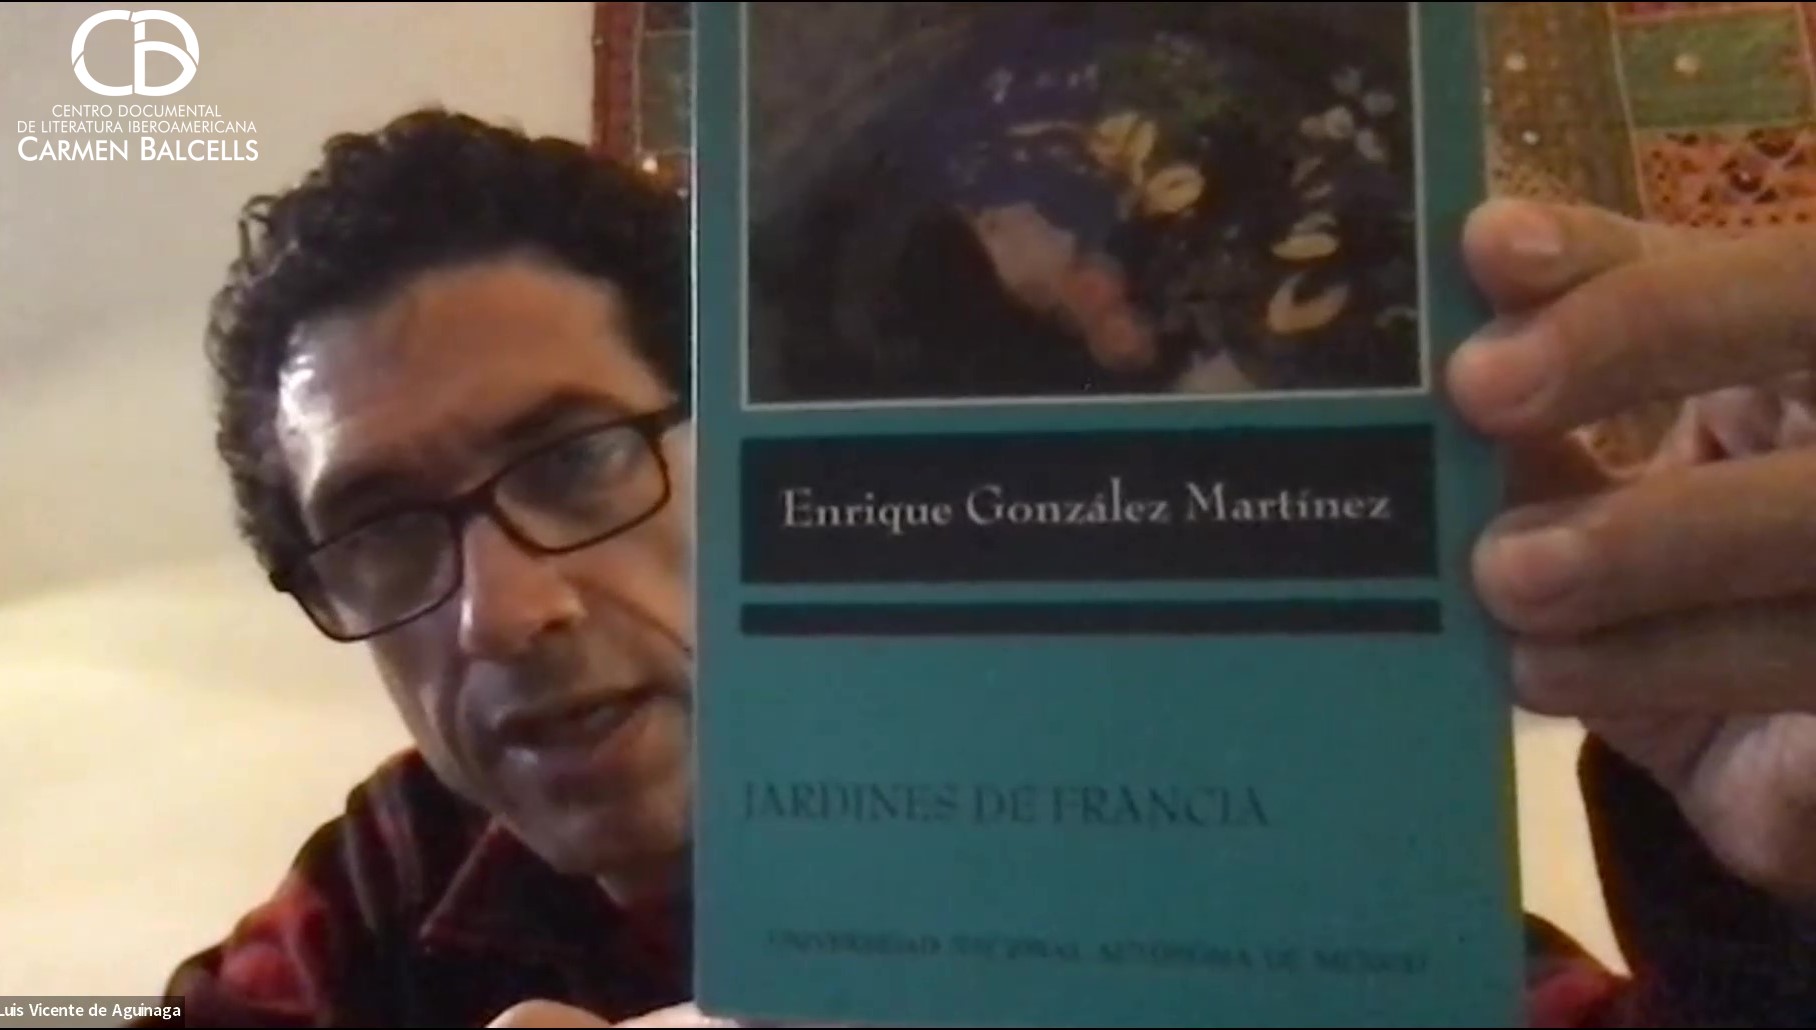 Enrique González Martínez